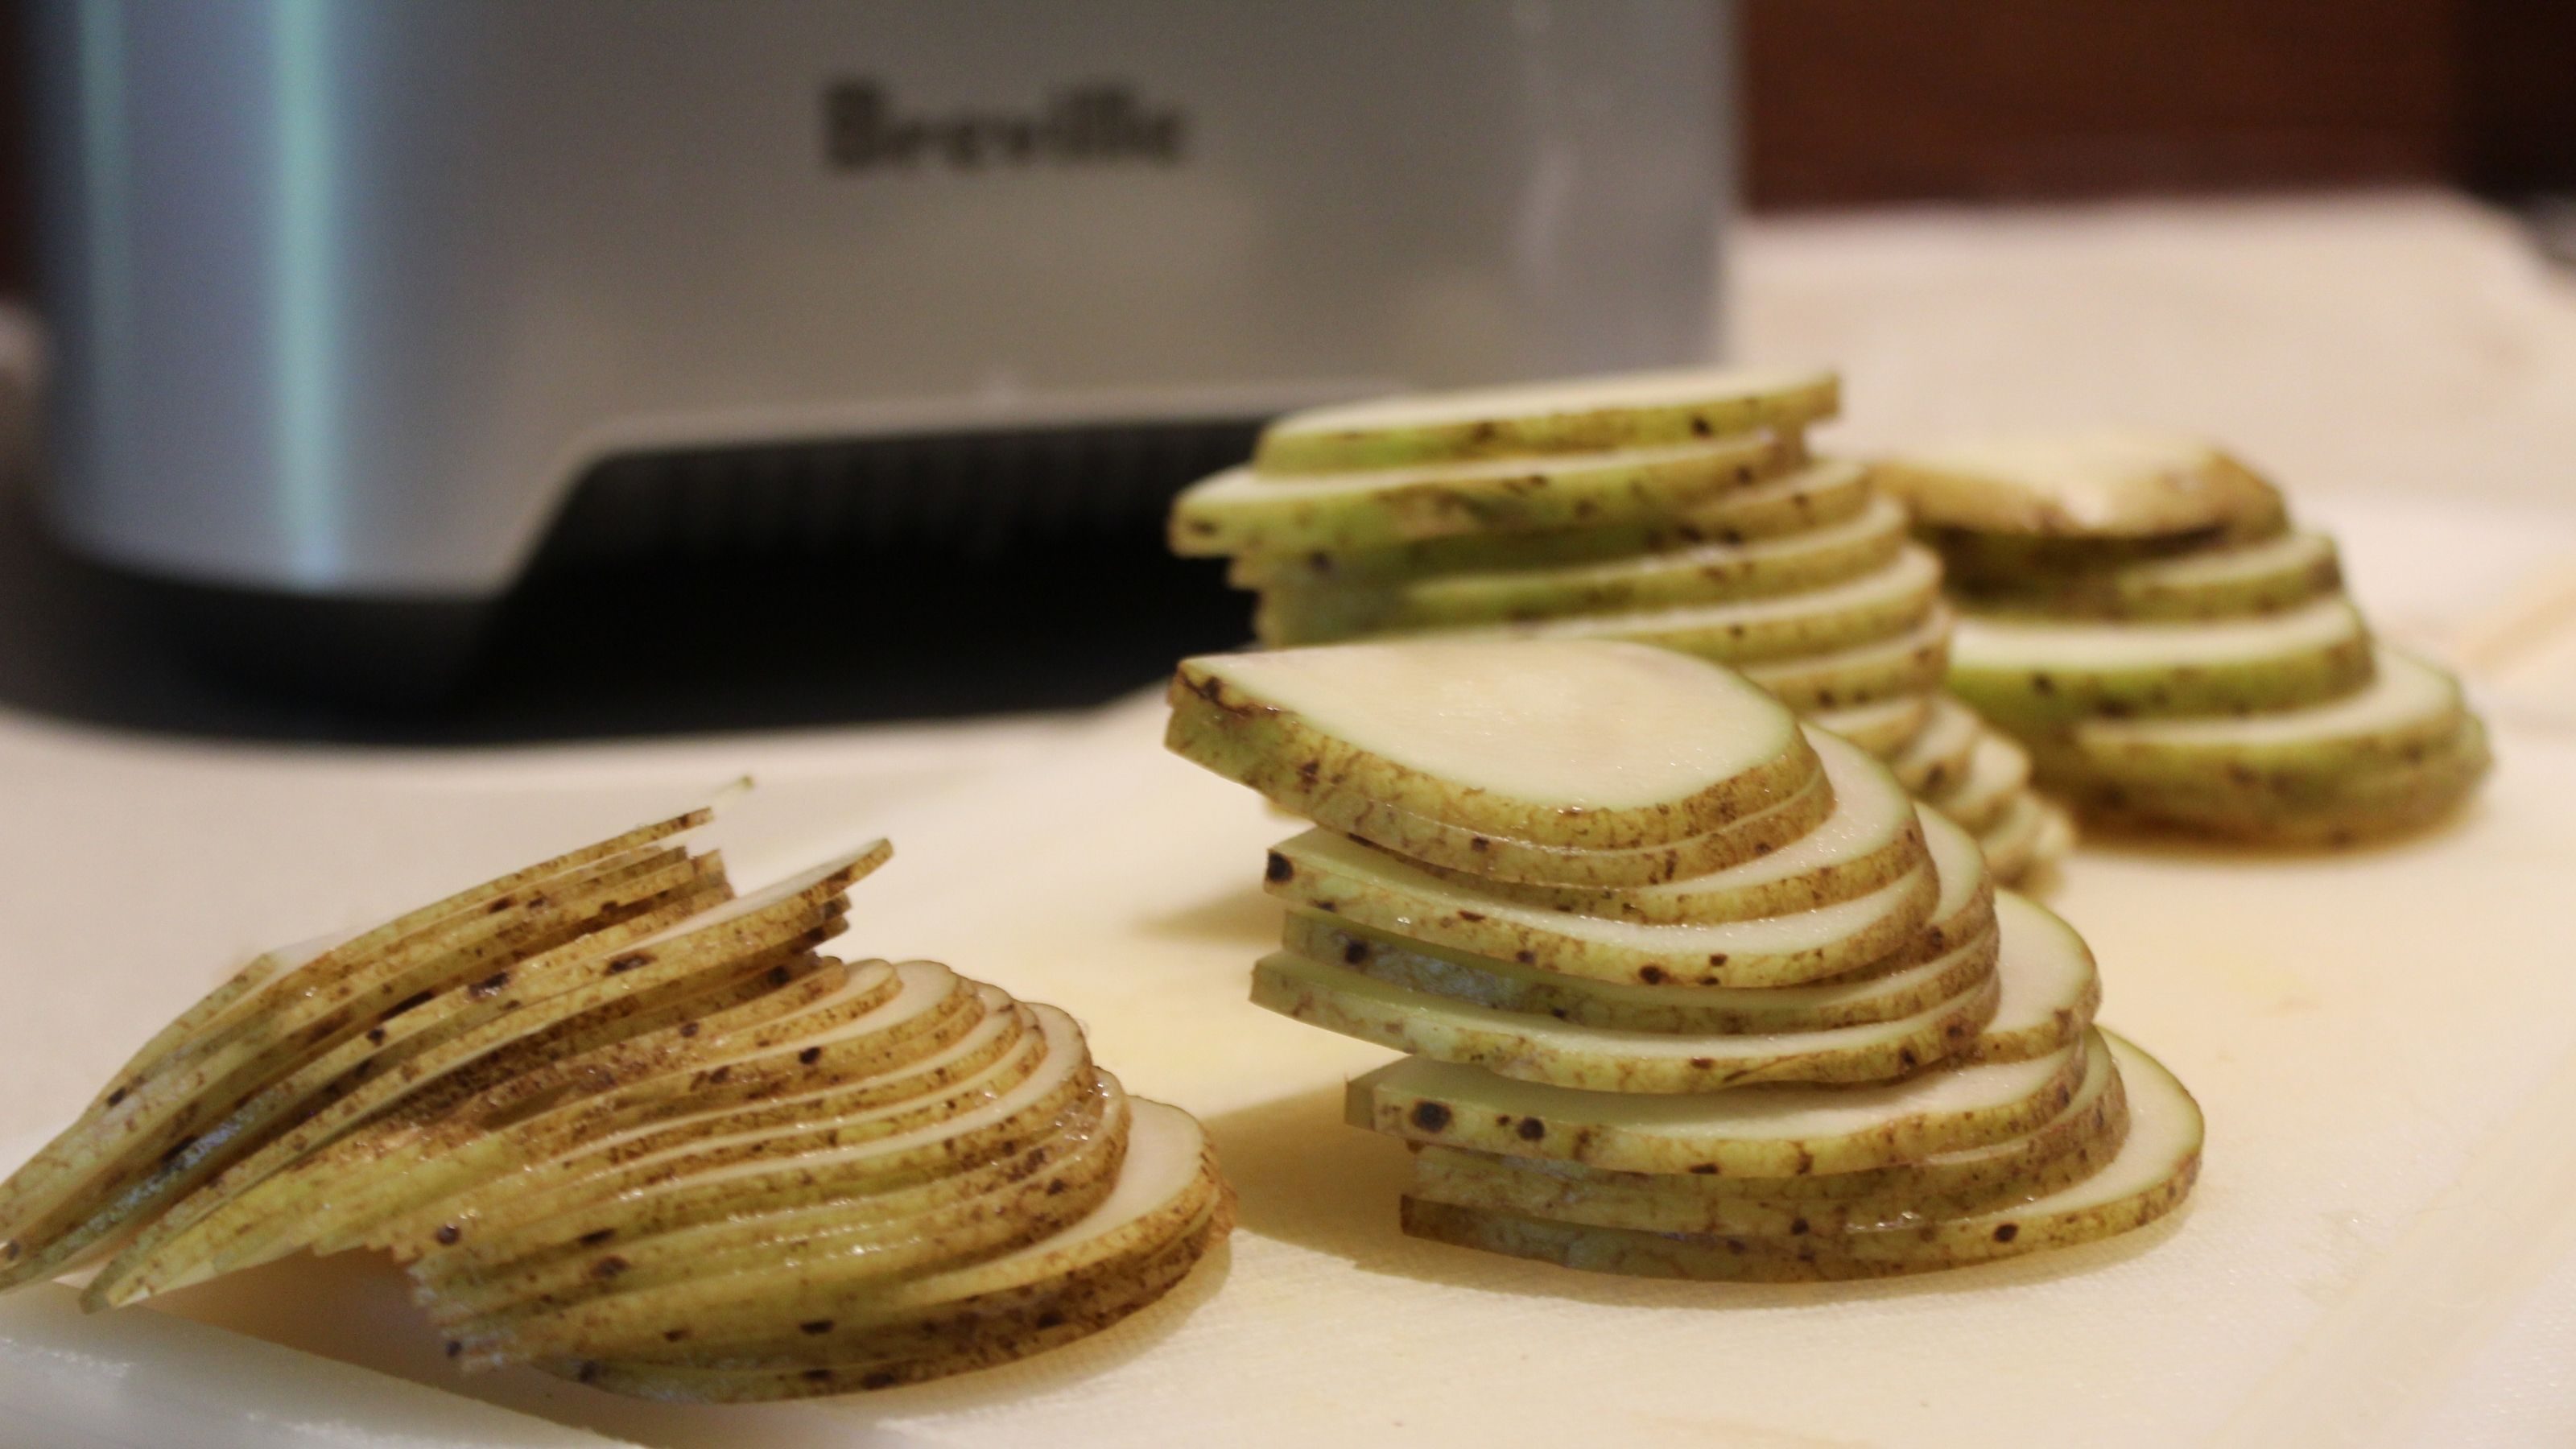 Breville 12-Cup Sous Chef™ Plus Food Processor